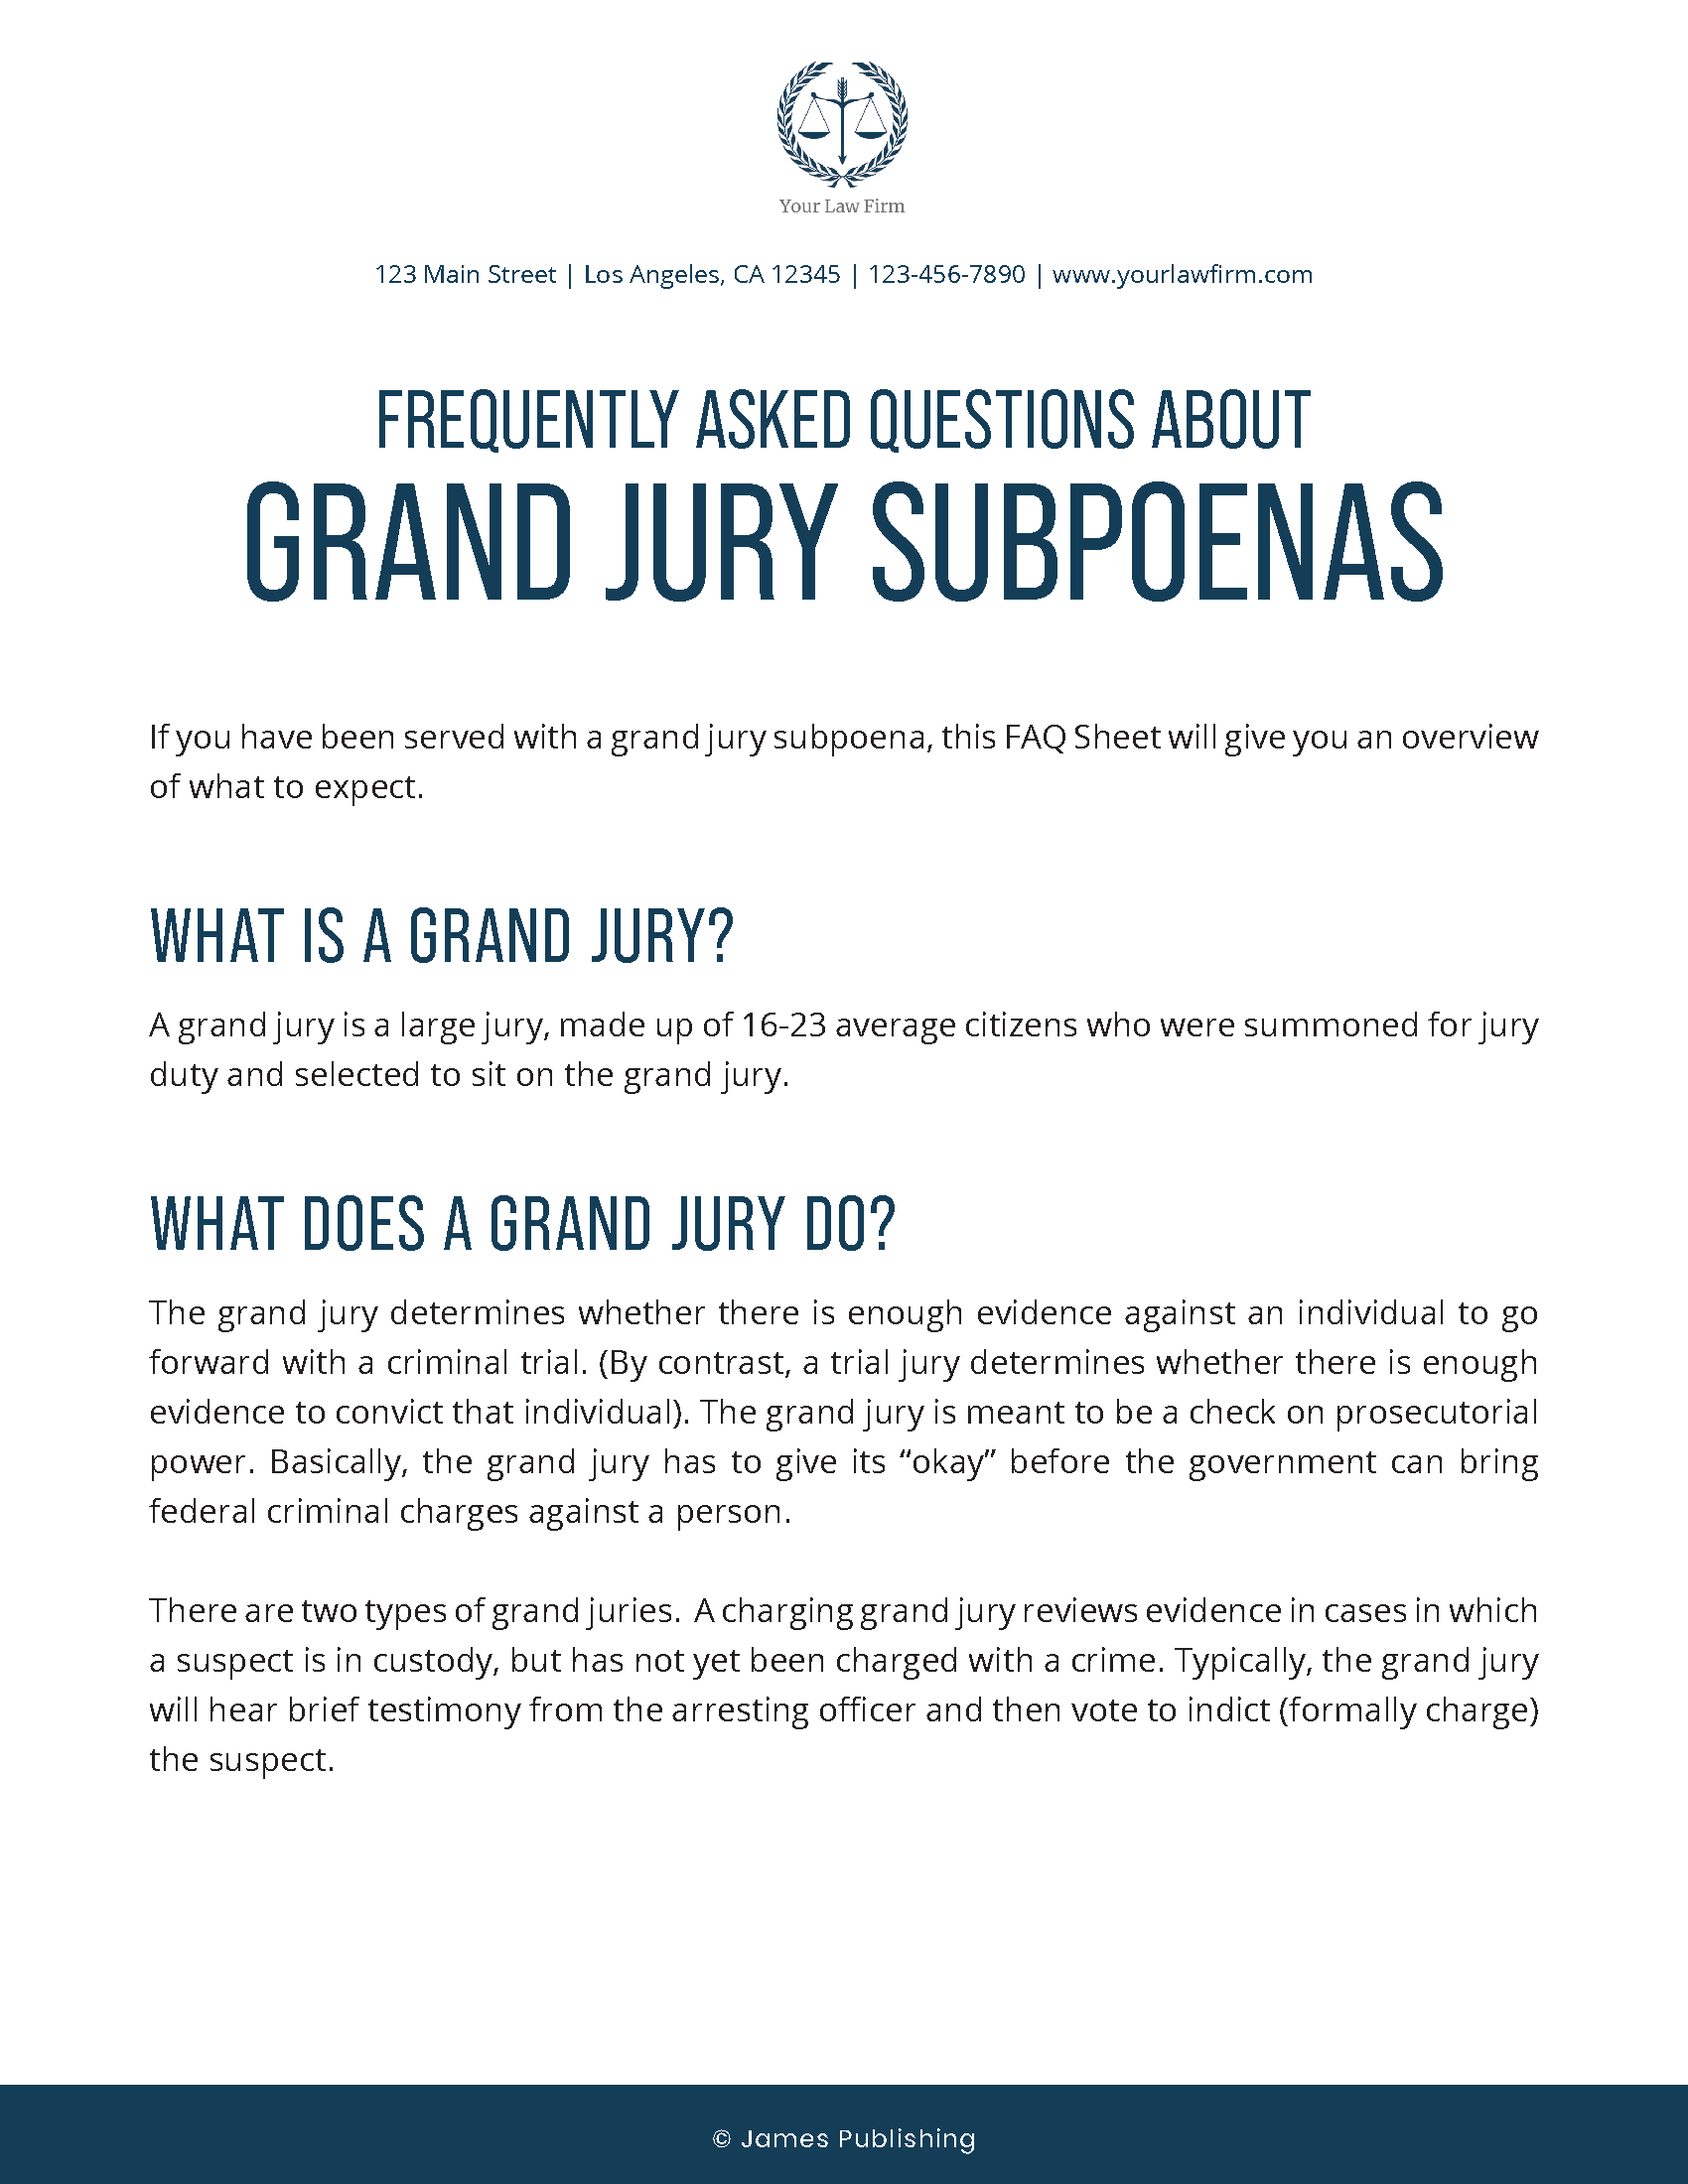 CRIM-17 FAQs Grand Jury Subpoenas